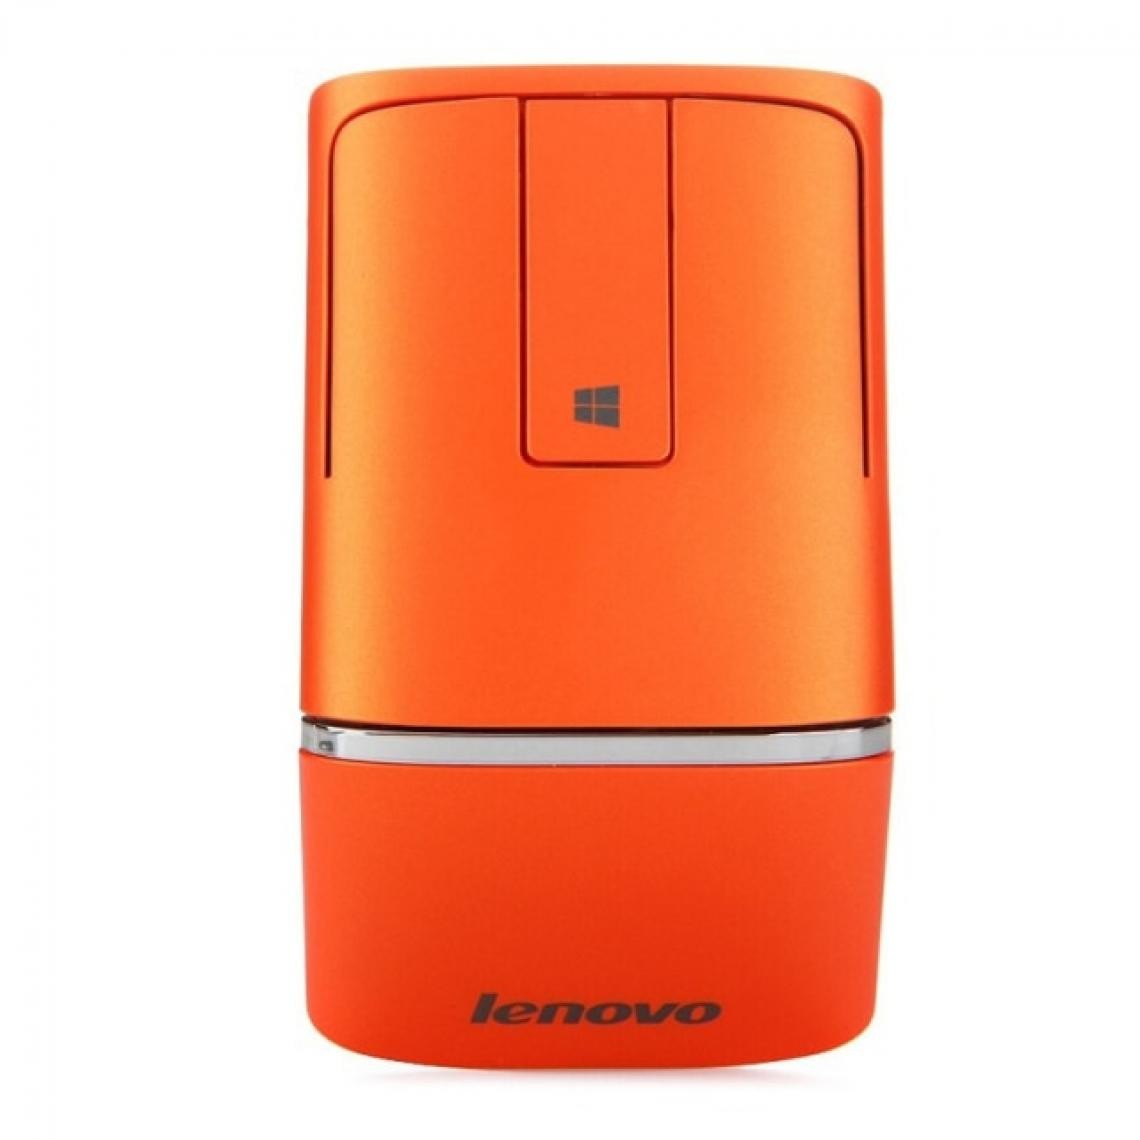 Universal - Souris sans fil avec support PPT 1200dpi 2.4G/bt4.0 Dual Mode Ergonomic Touch Lever pour fenêtres | Souris (orange) - Souris